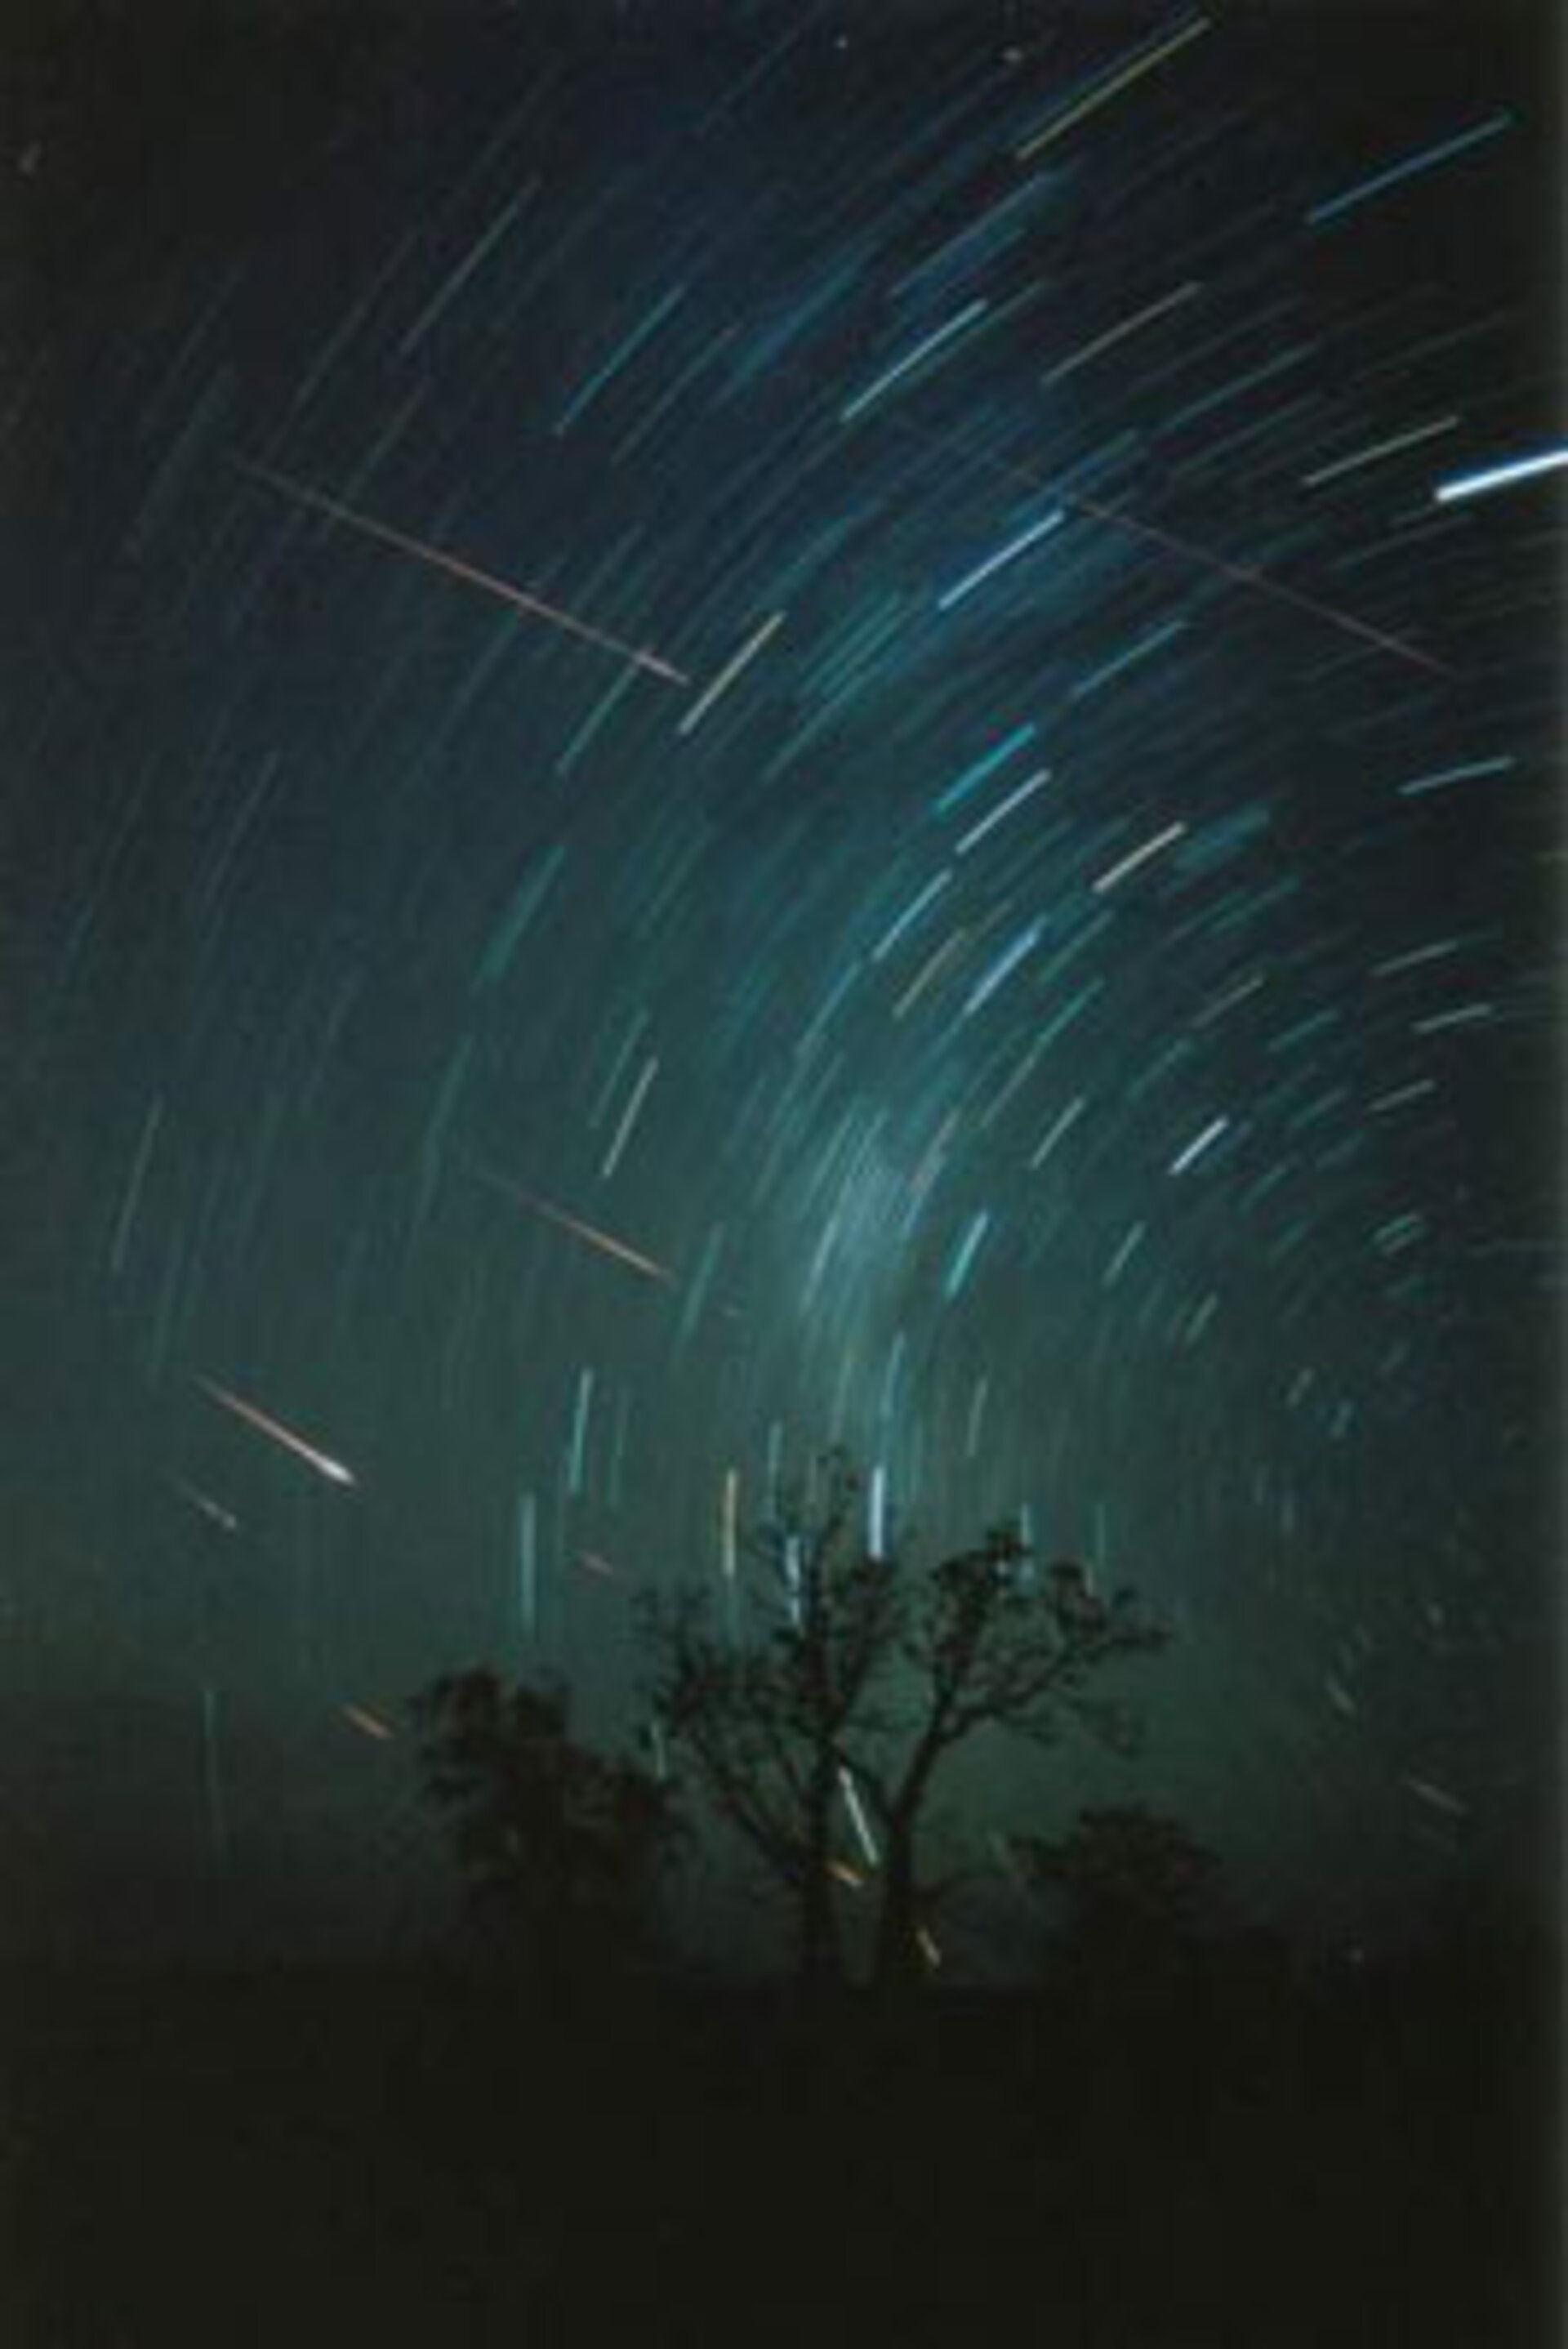 Leonid meteors in Western Australia